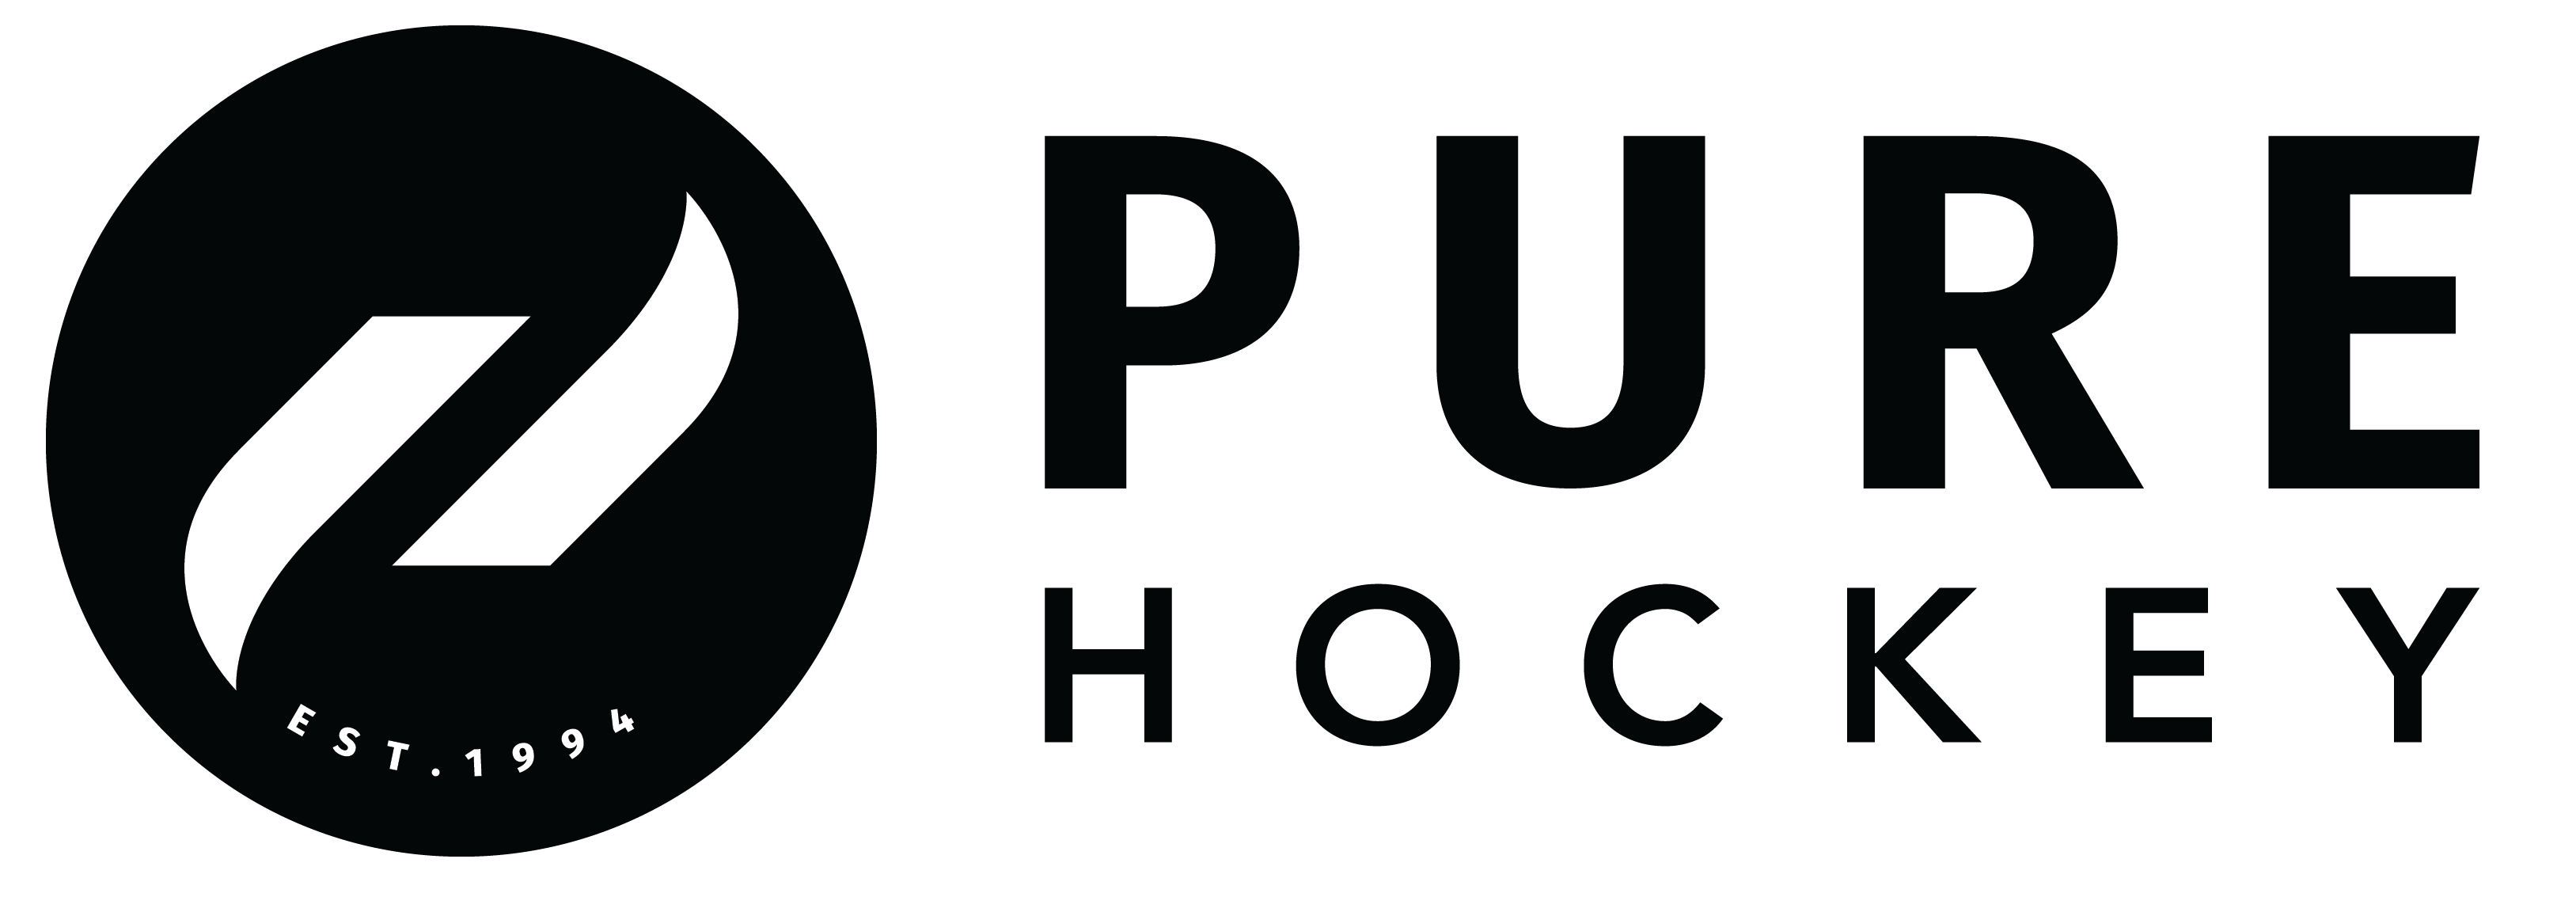 PH Logo 3 BW cropped